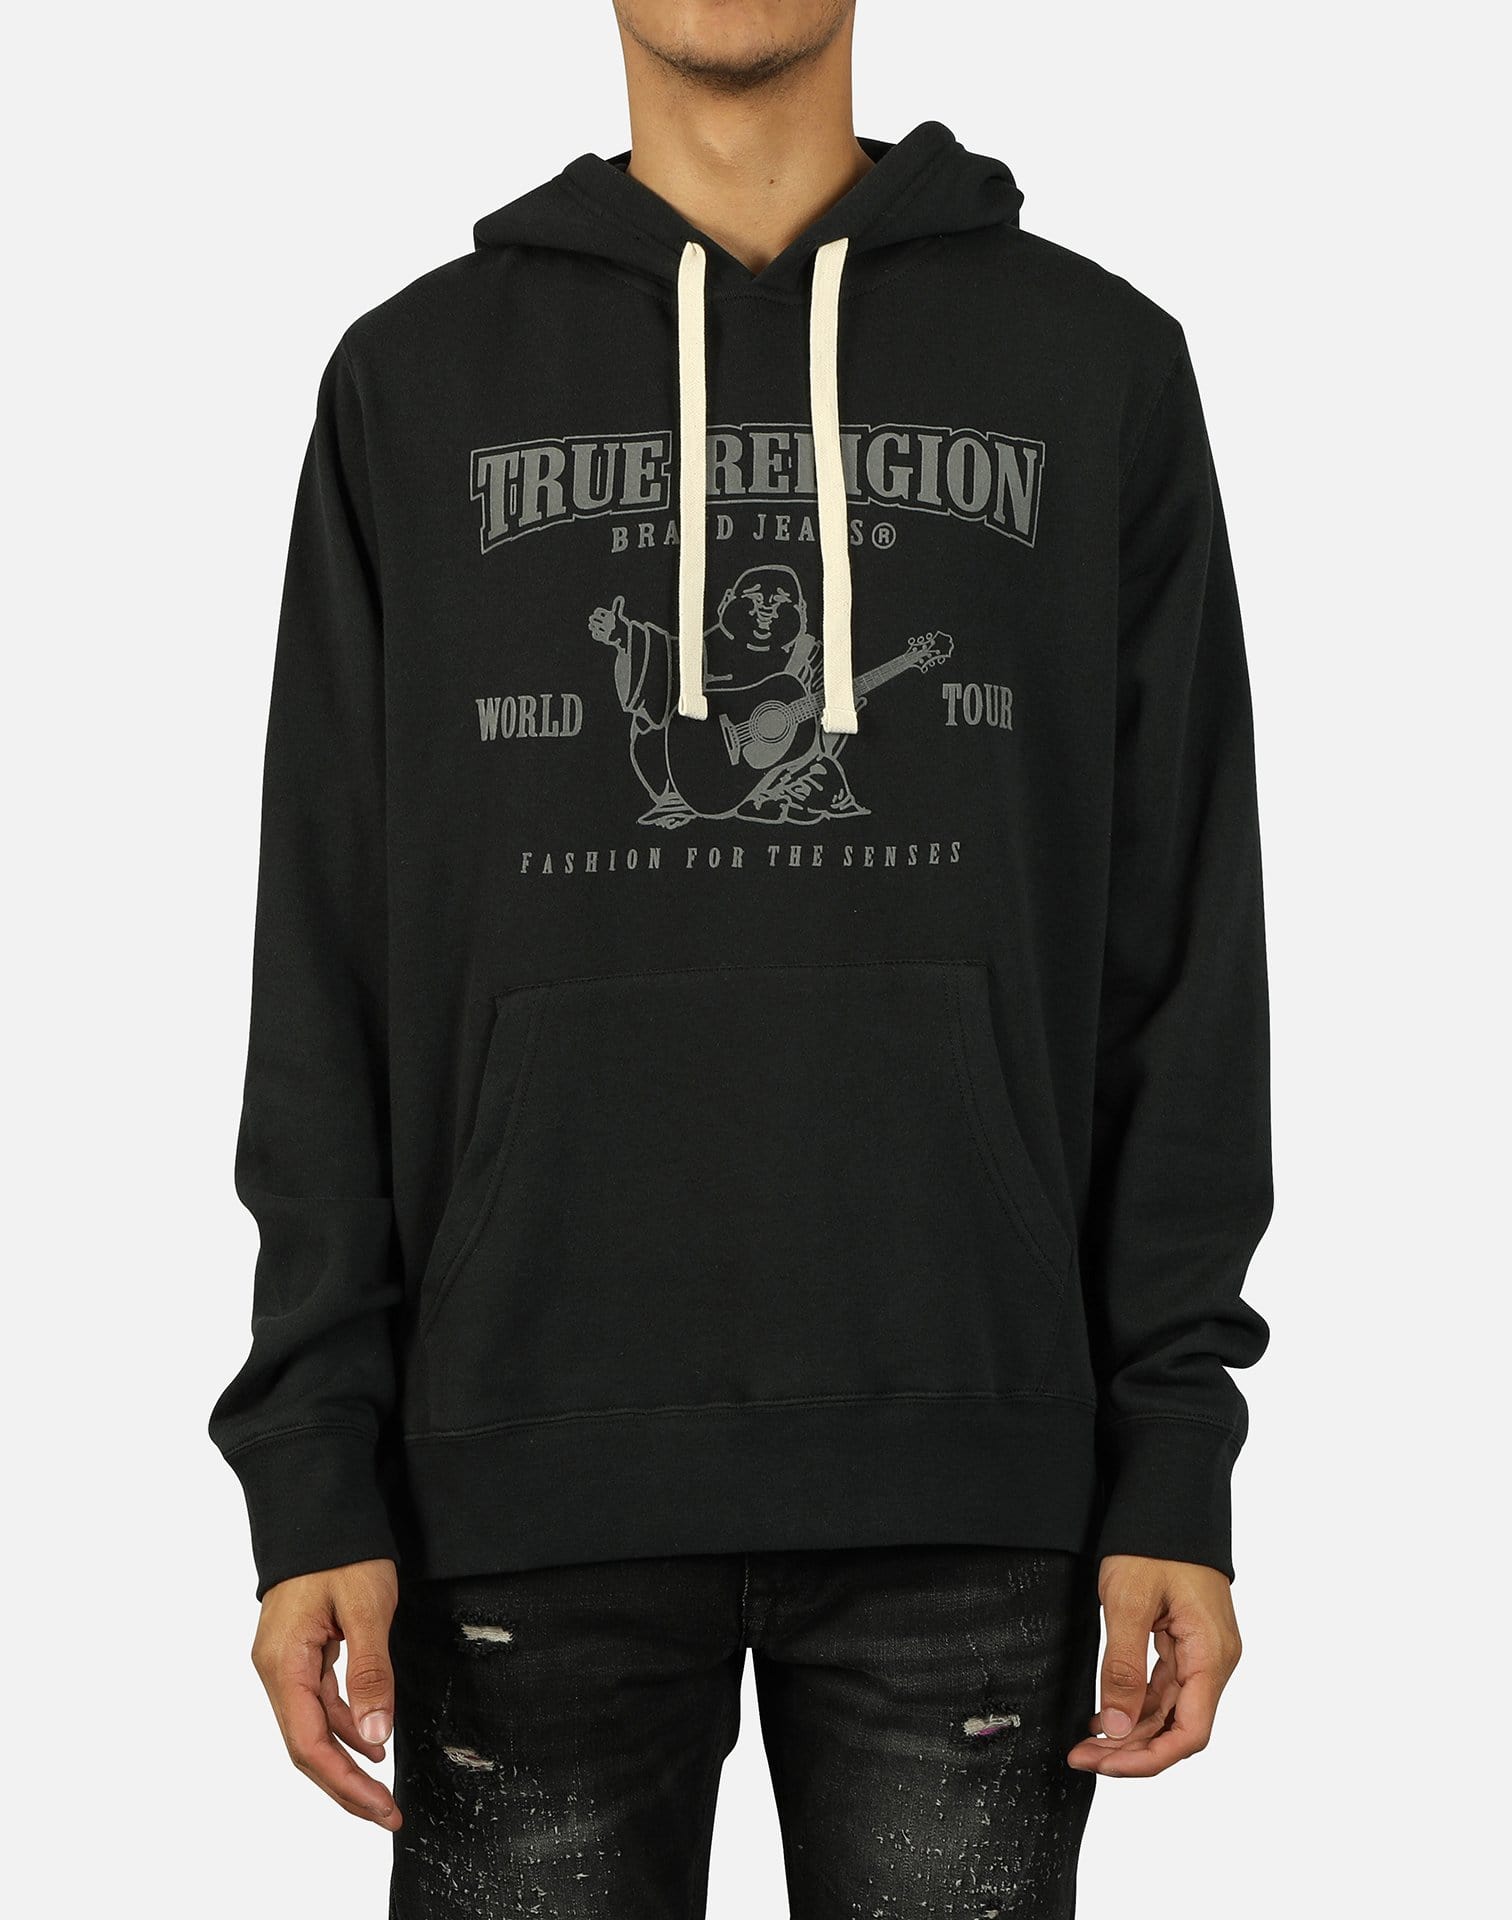 true religion black jumper